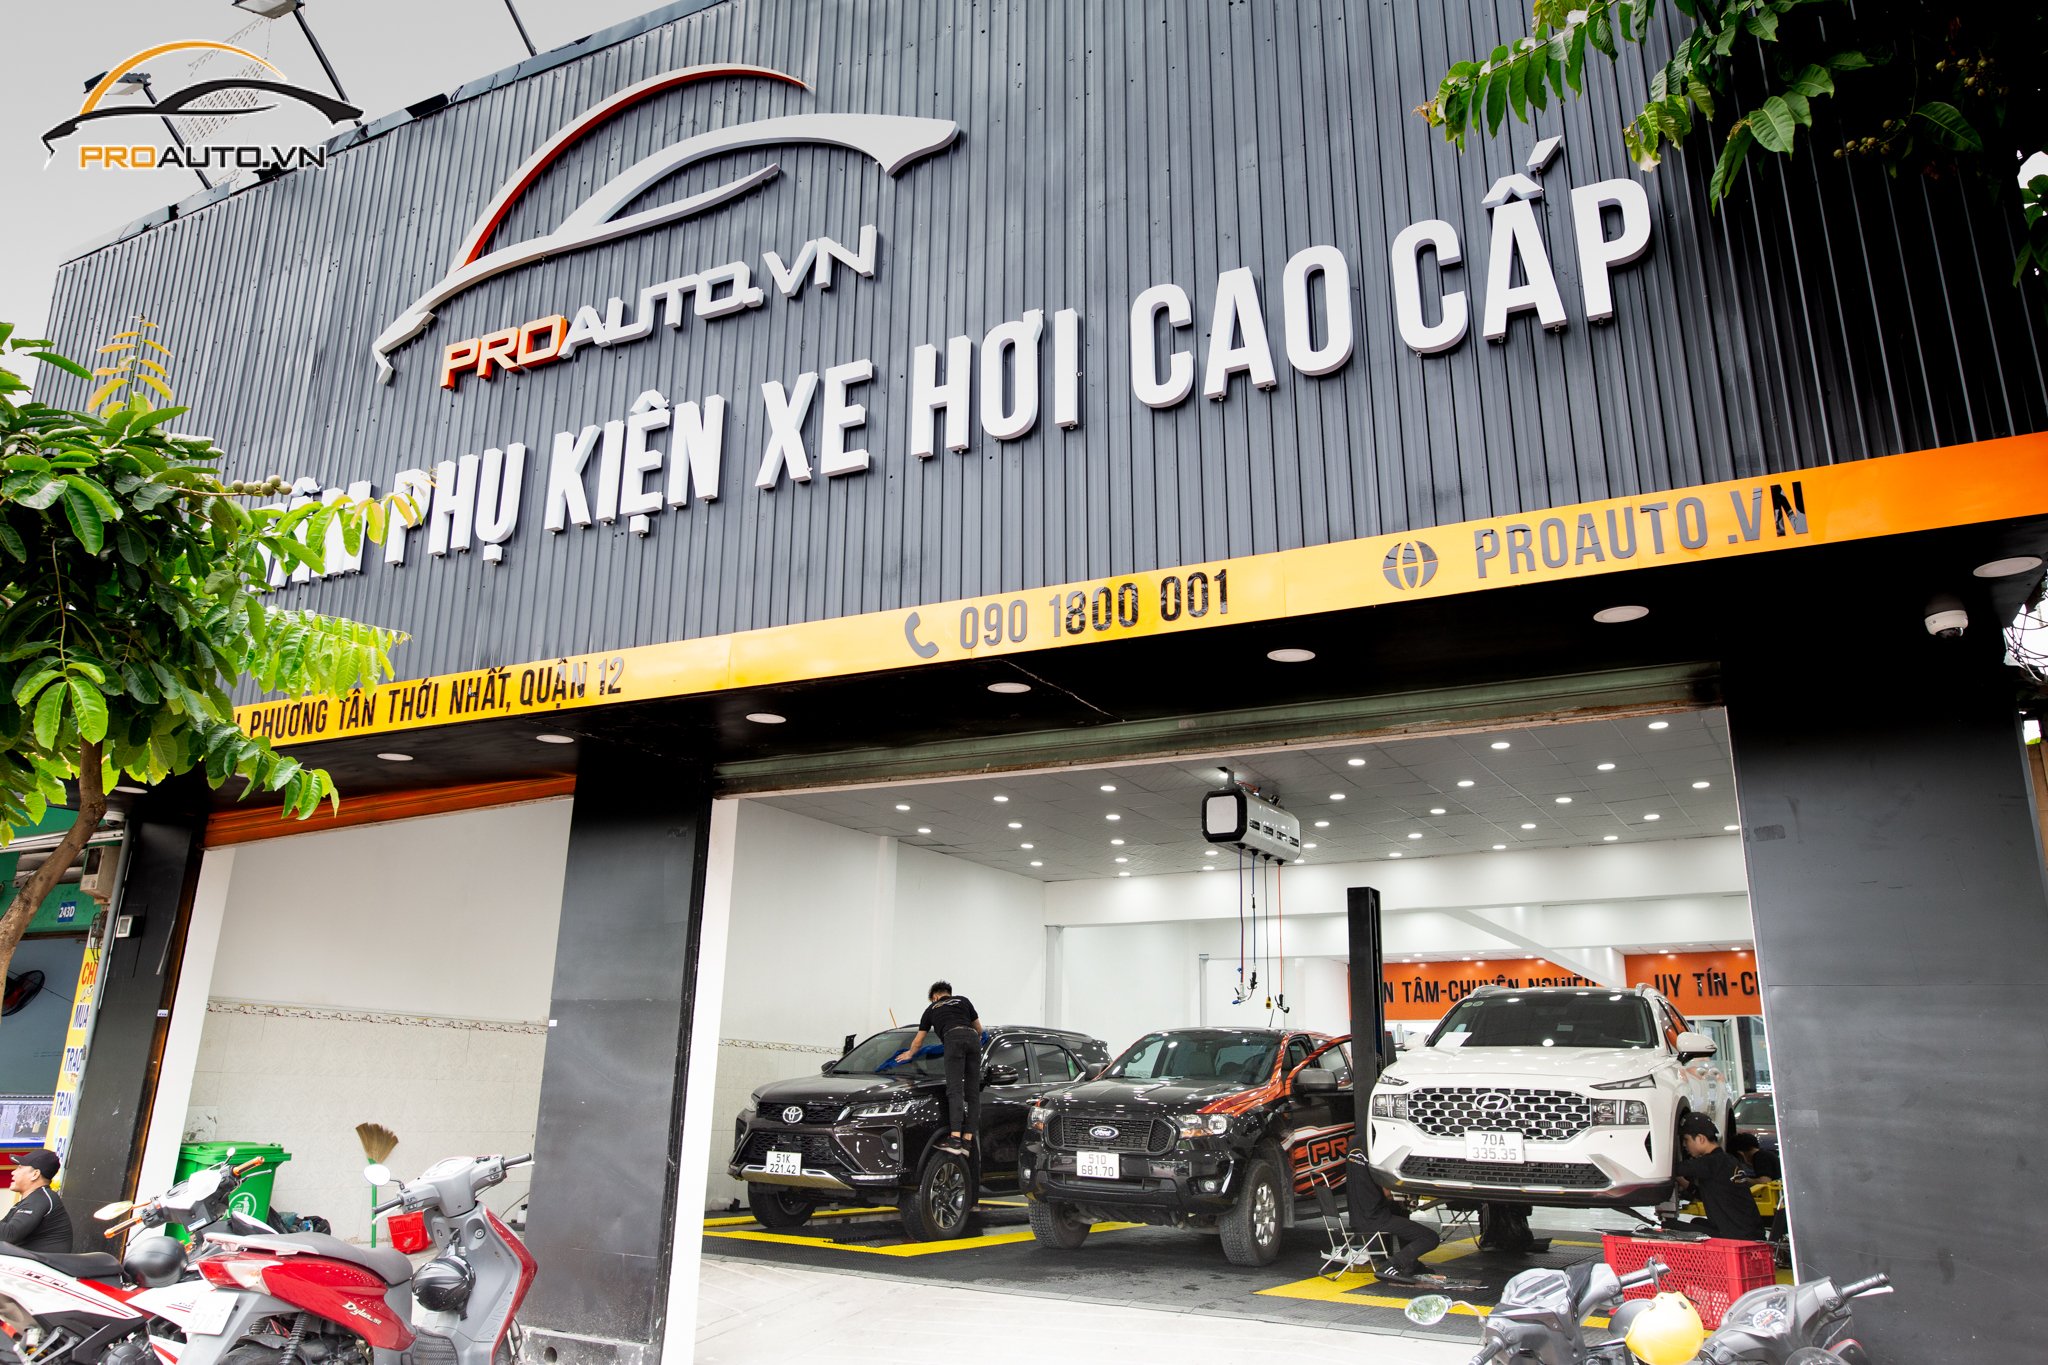 Proauto.vn - Trung tâm phụ kiện đồ chơi xe hơi uy tín tại TP. Phú Quốc